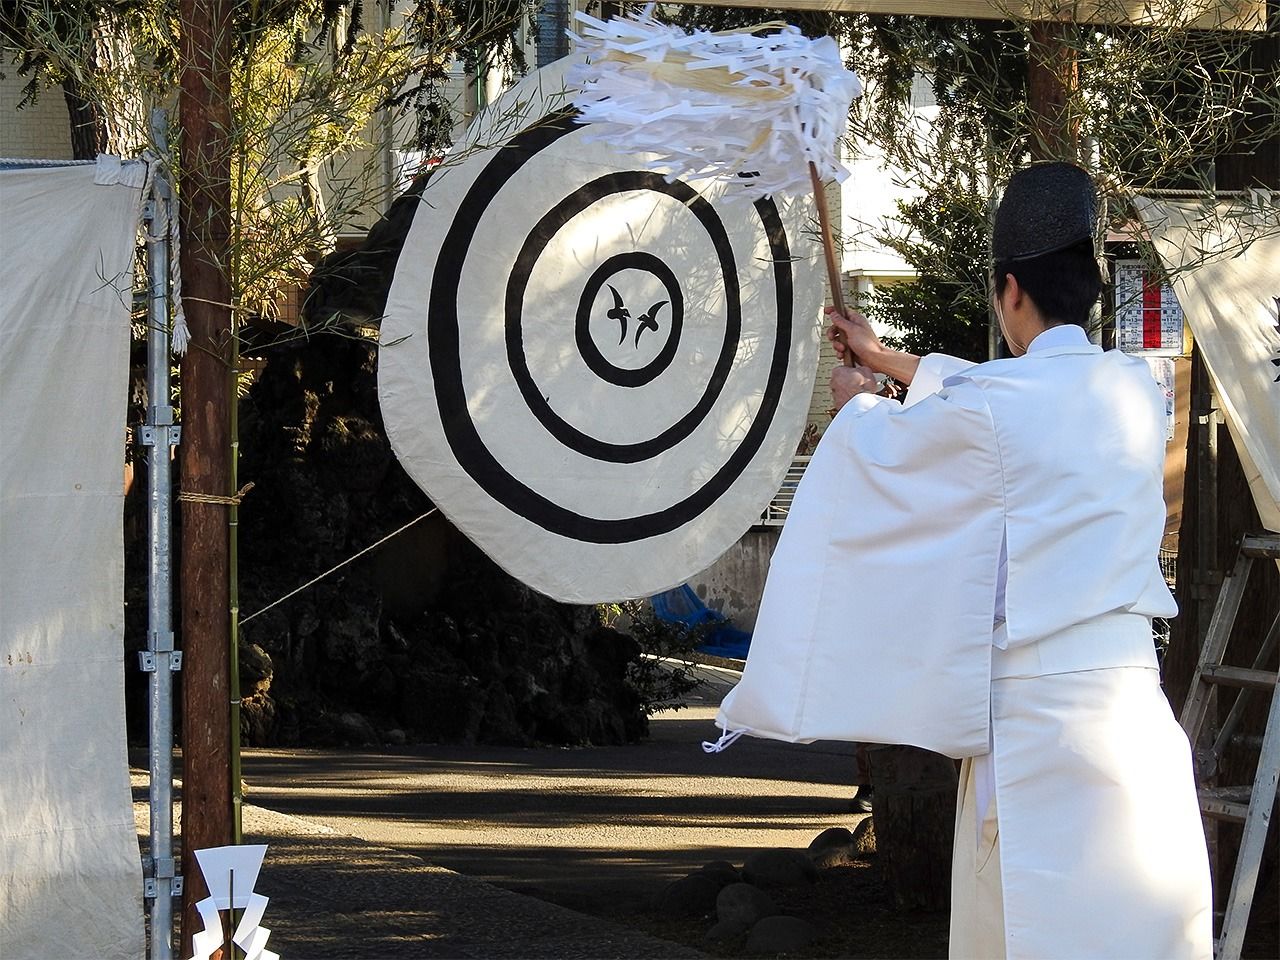 Священник совершает синтоистский ритуал перед атрибутом с изображением ворон